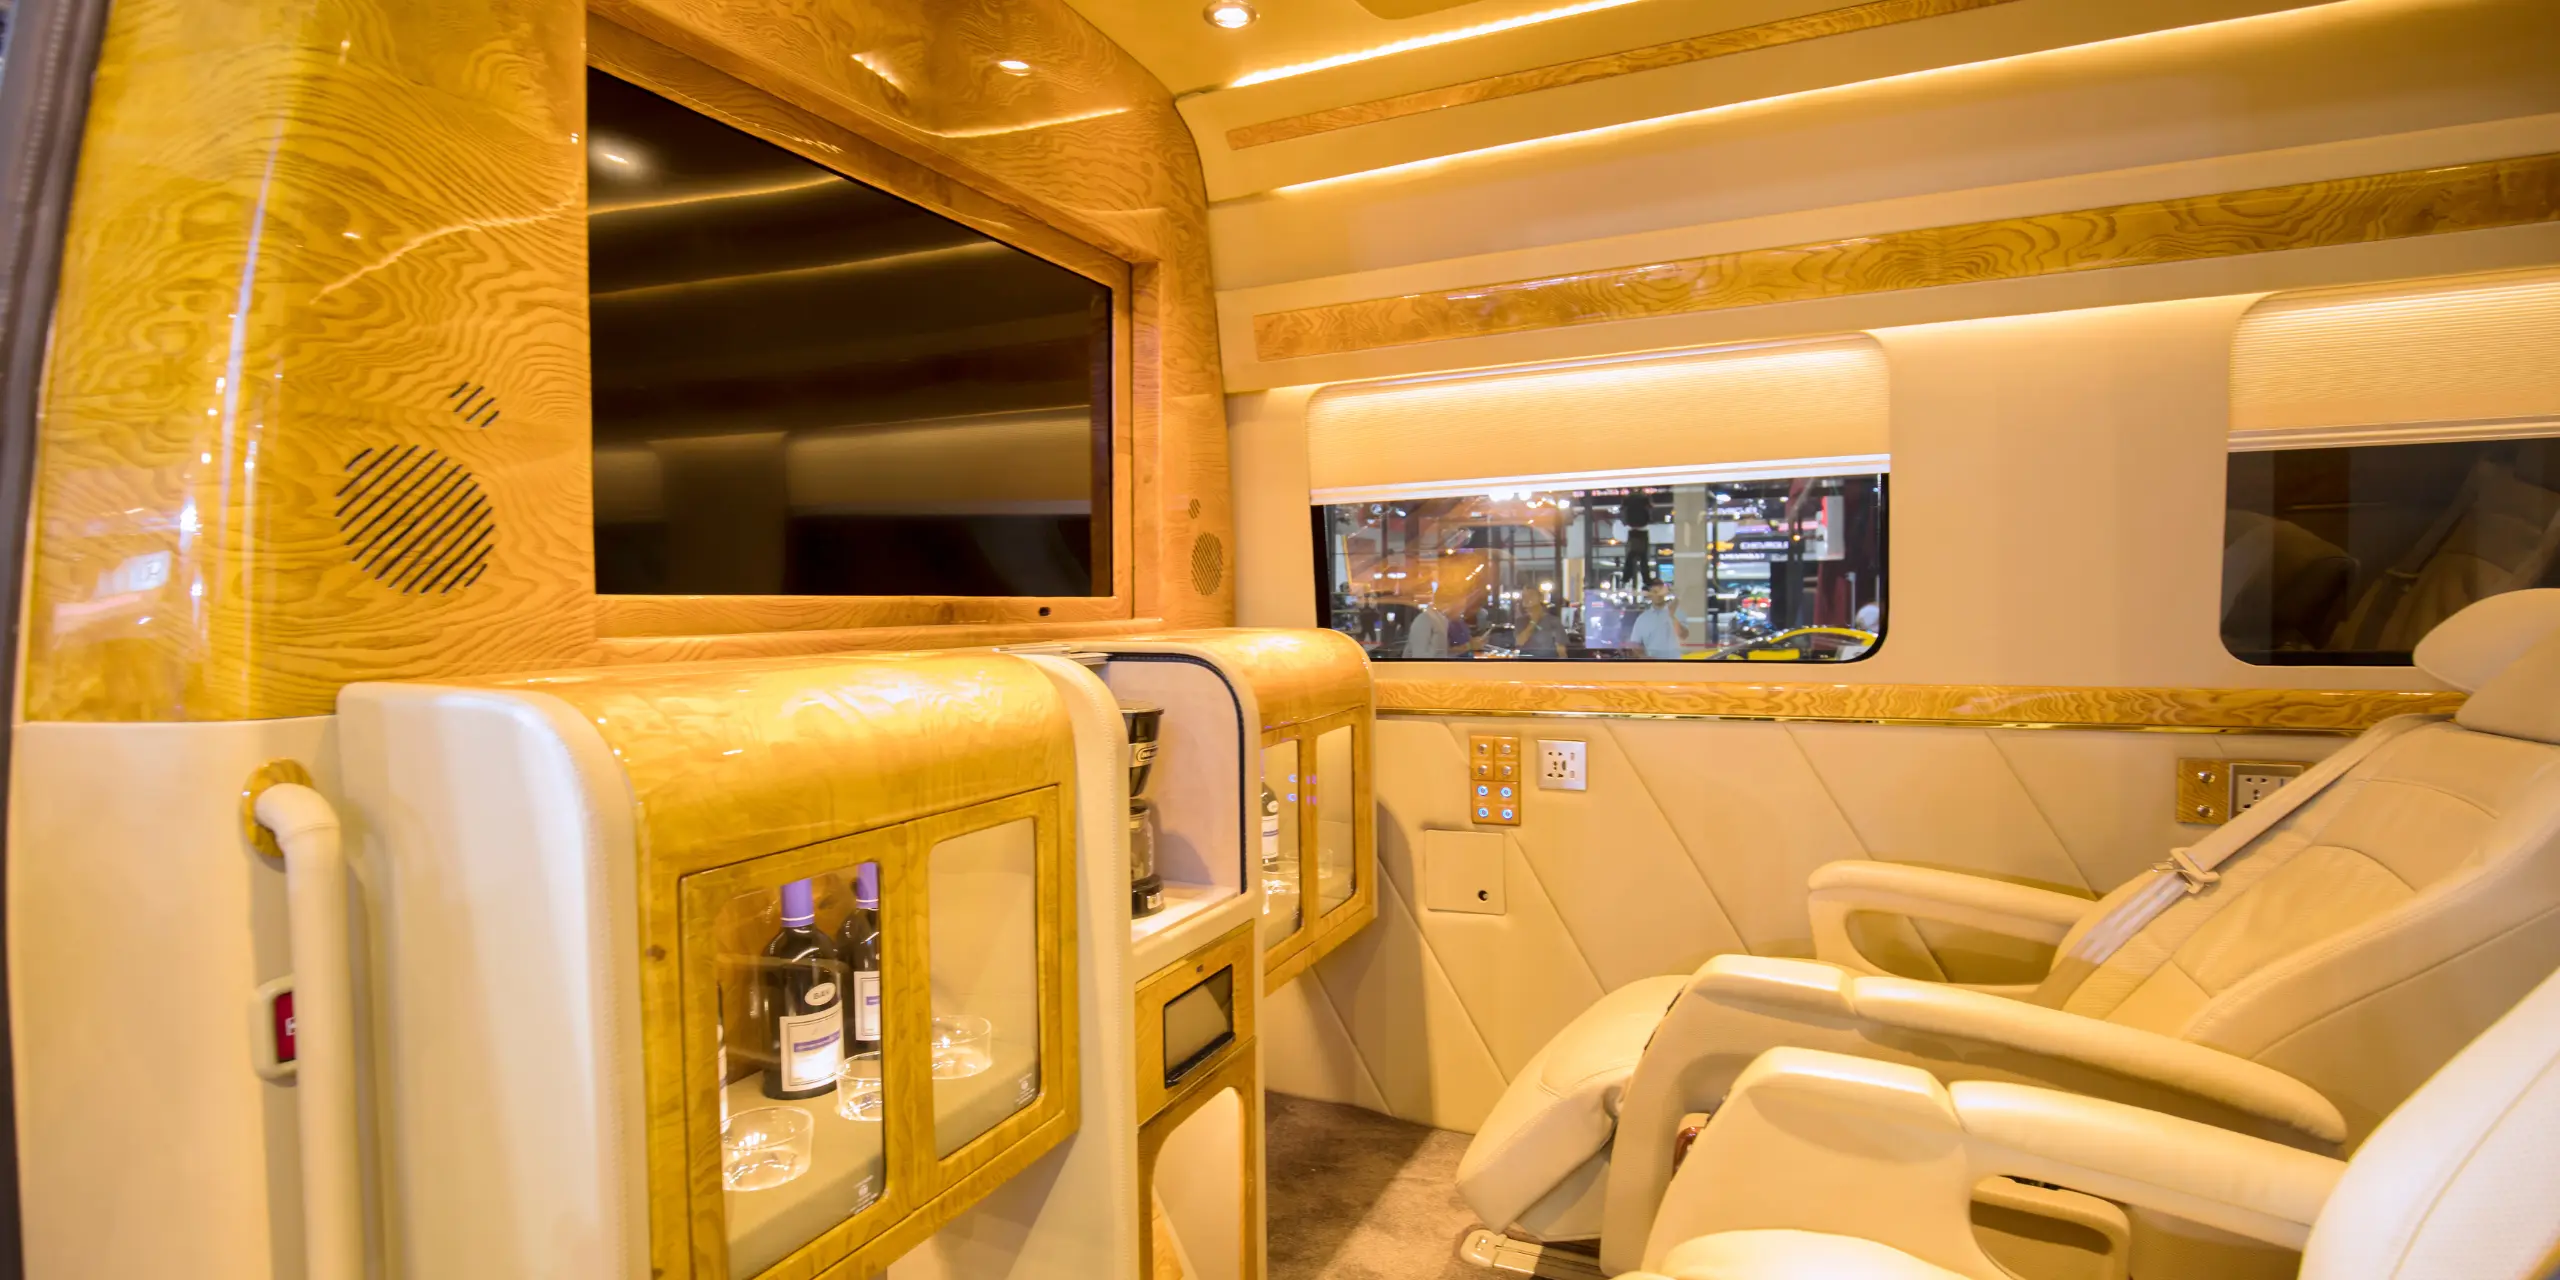 Charter empire VIP bus interior